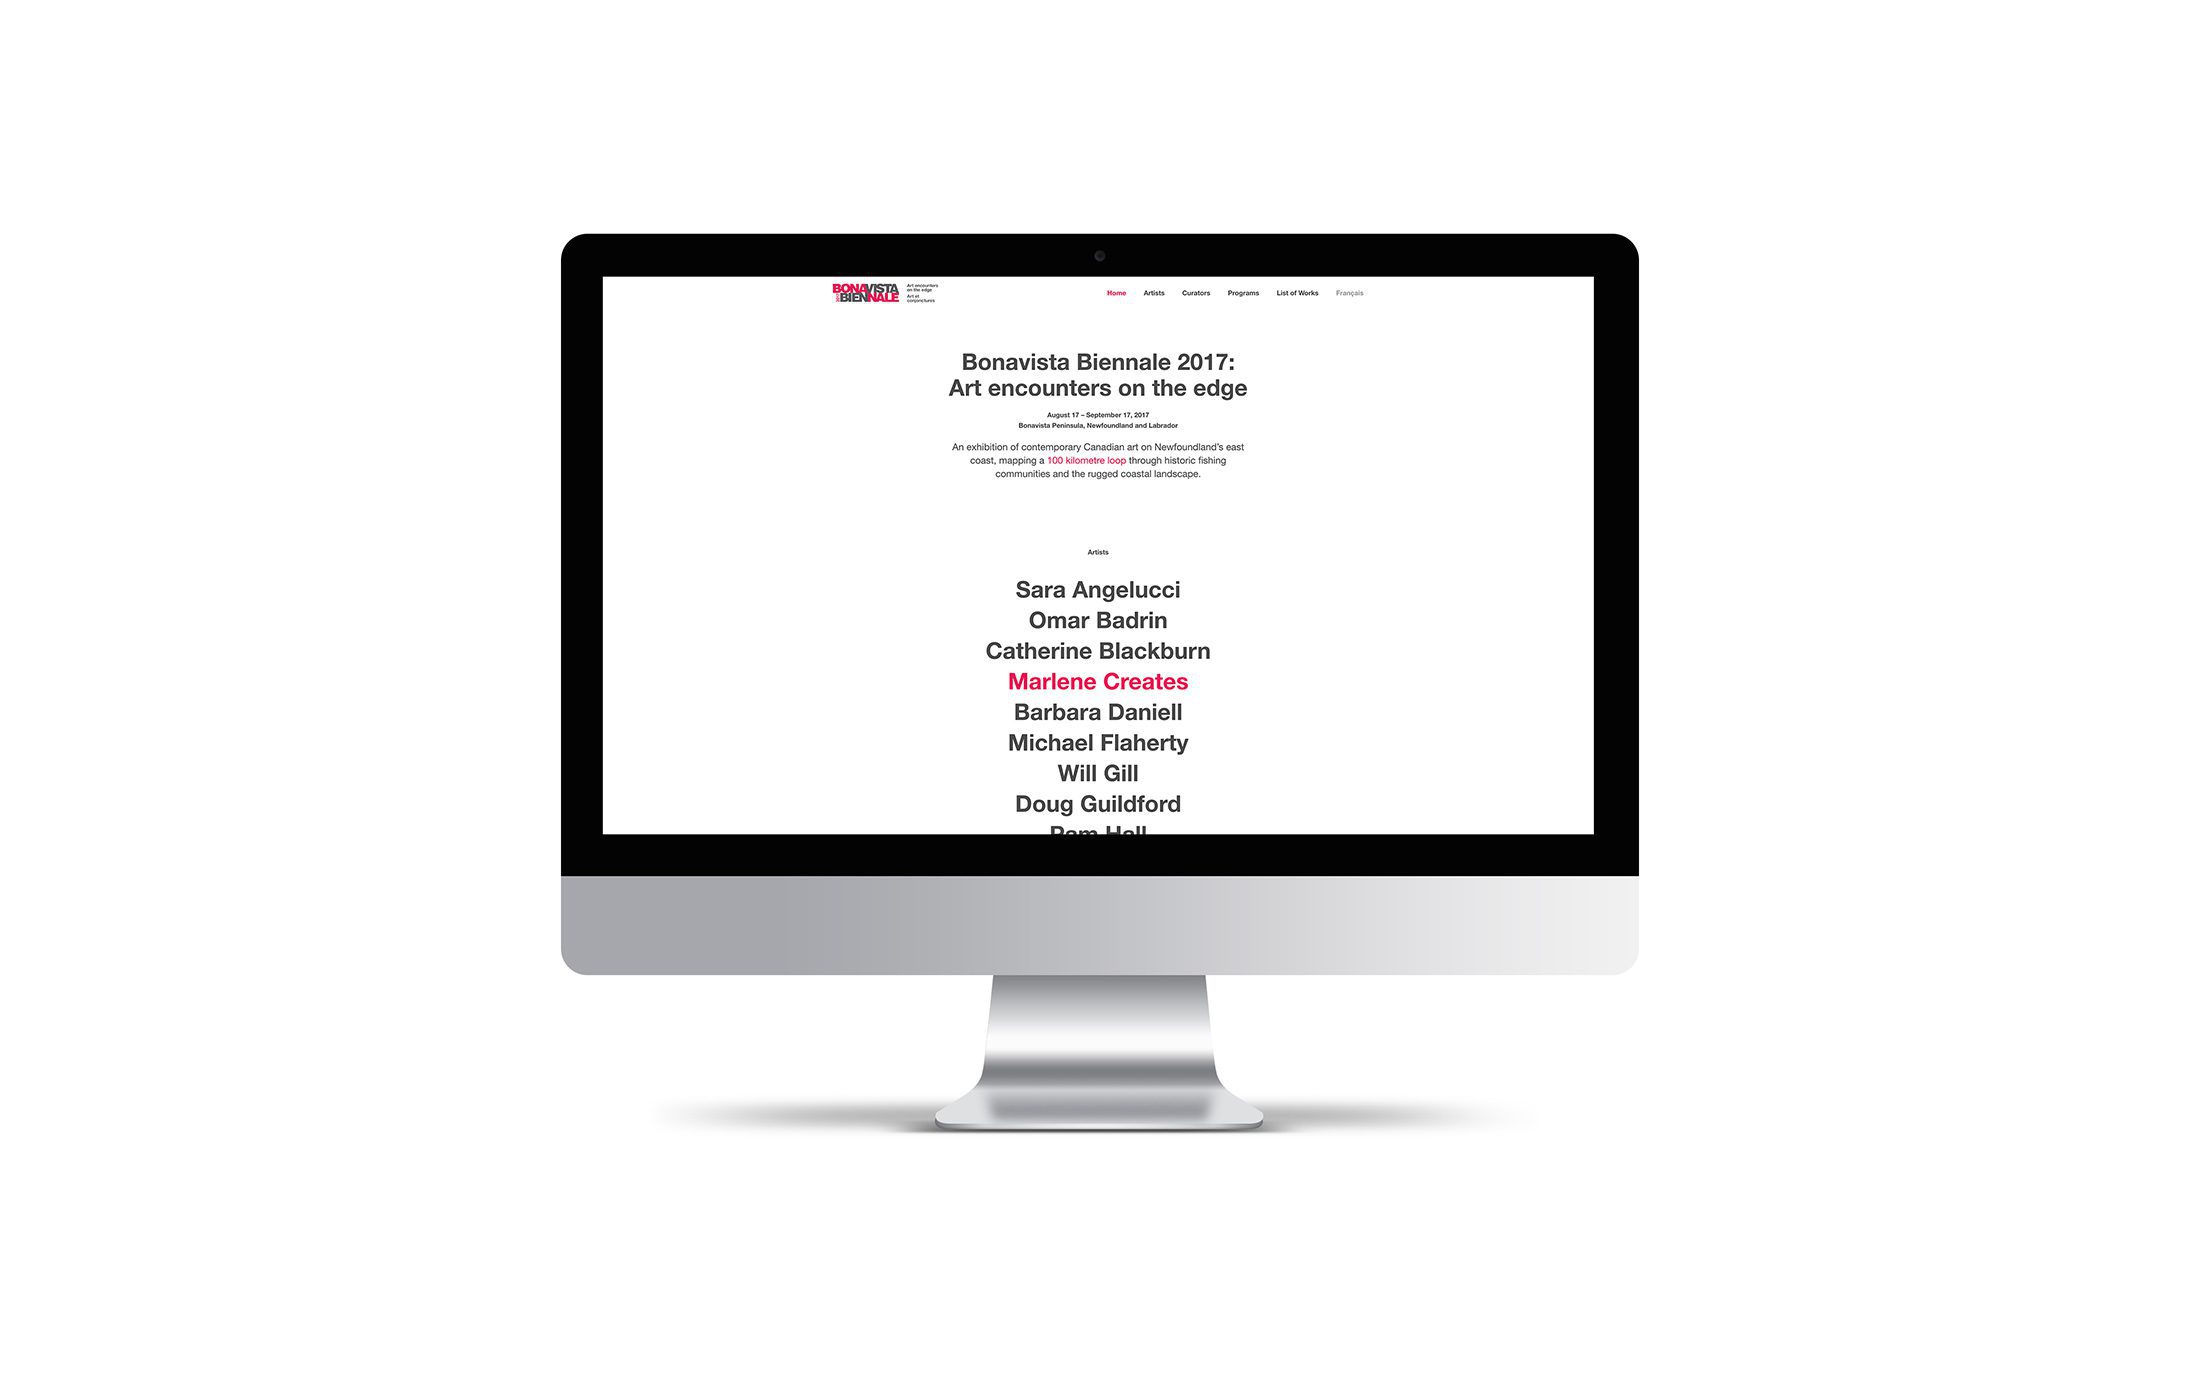 iMac screen showing artist listings from 2017 Bonavista Biennale website